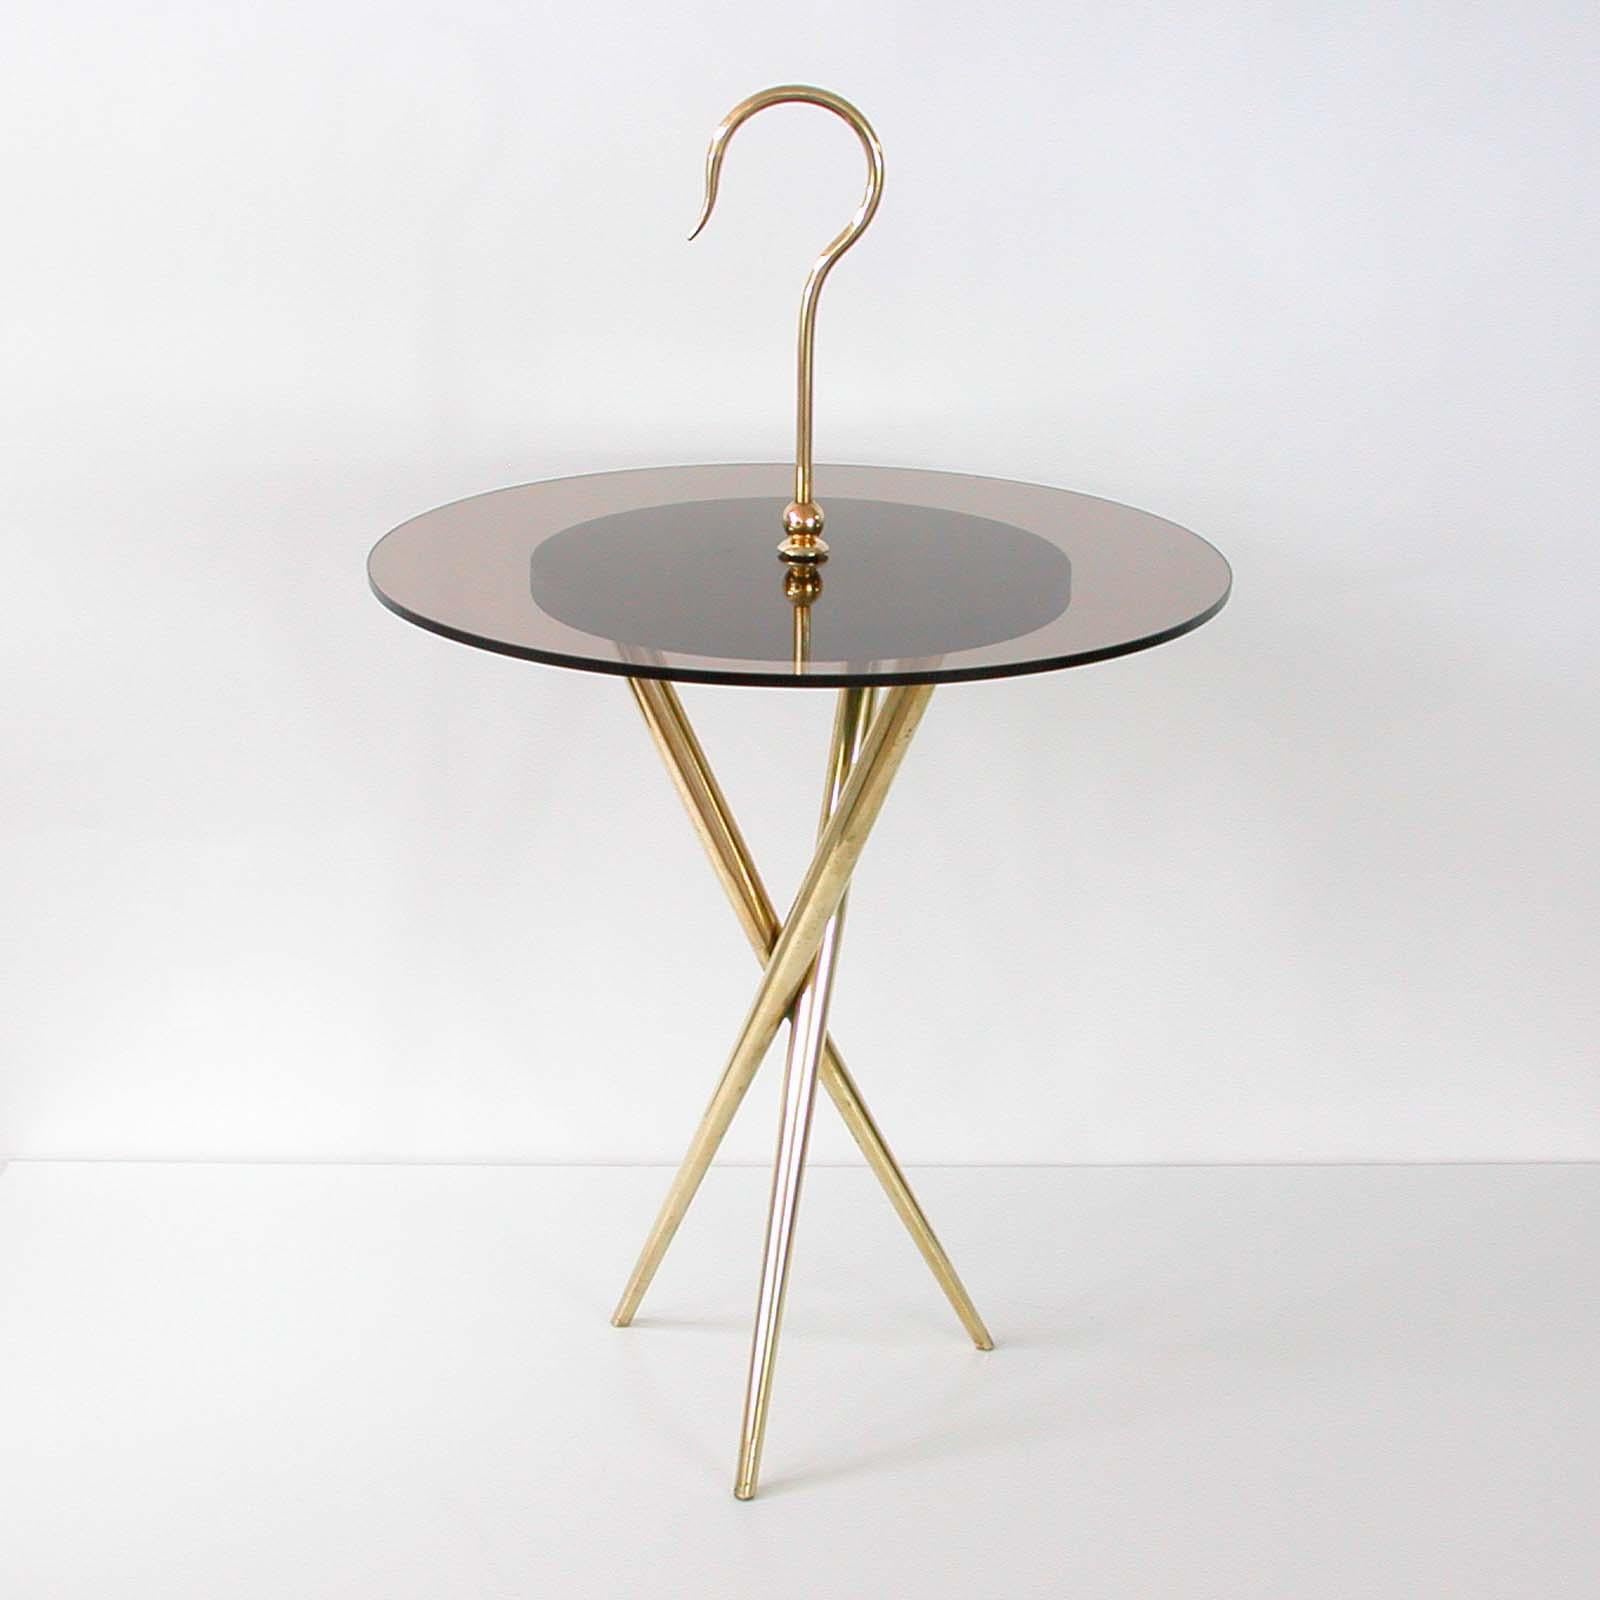 Dieser runde dreibeinige Beistelltisch wurde in den 1950er Jahren in Italien nach dem Vorbild von Ico Parisi hergestellt. Er hat einen Sockel aus Messing, eine Tischplatte aus bronzefarbenem (geräuchertem) Glas und einen Griff und Details aus